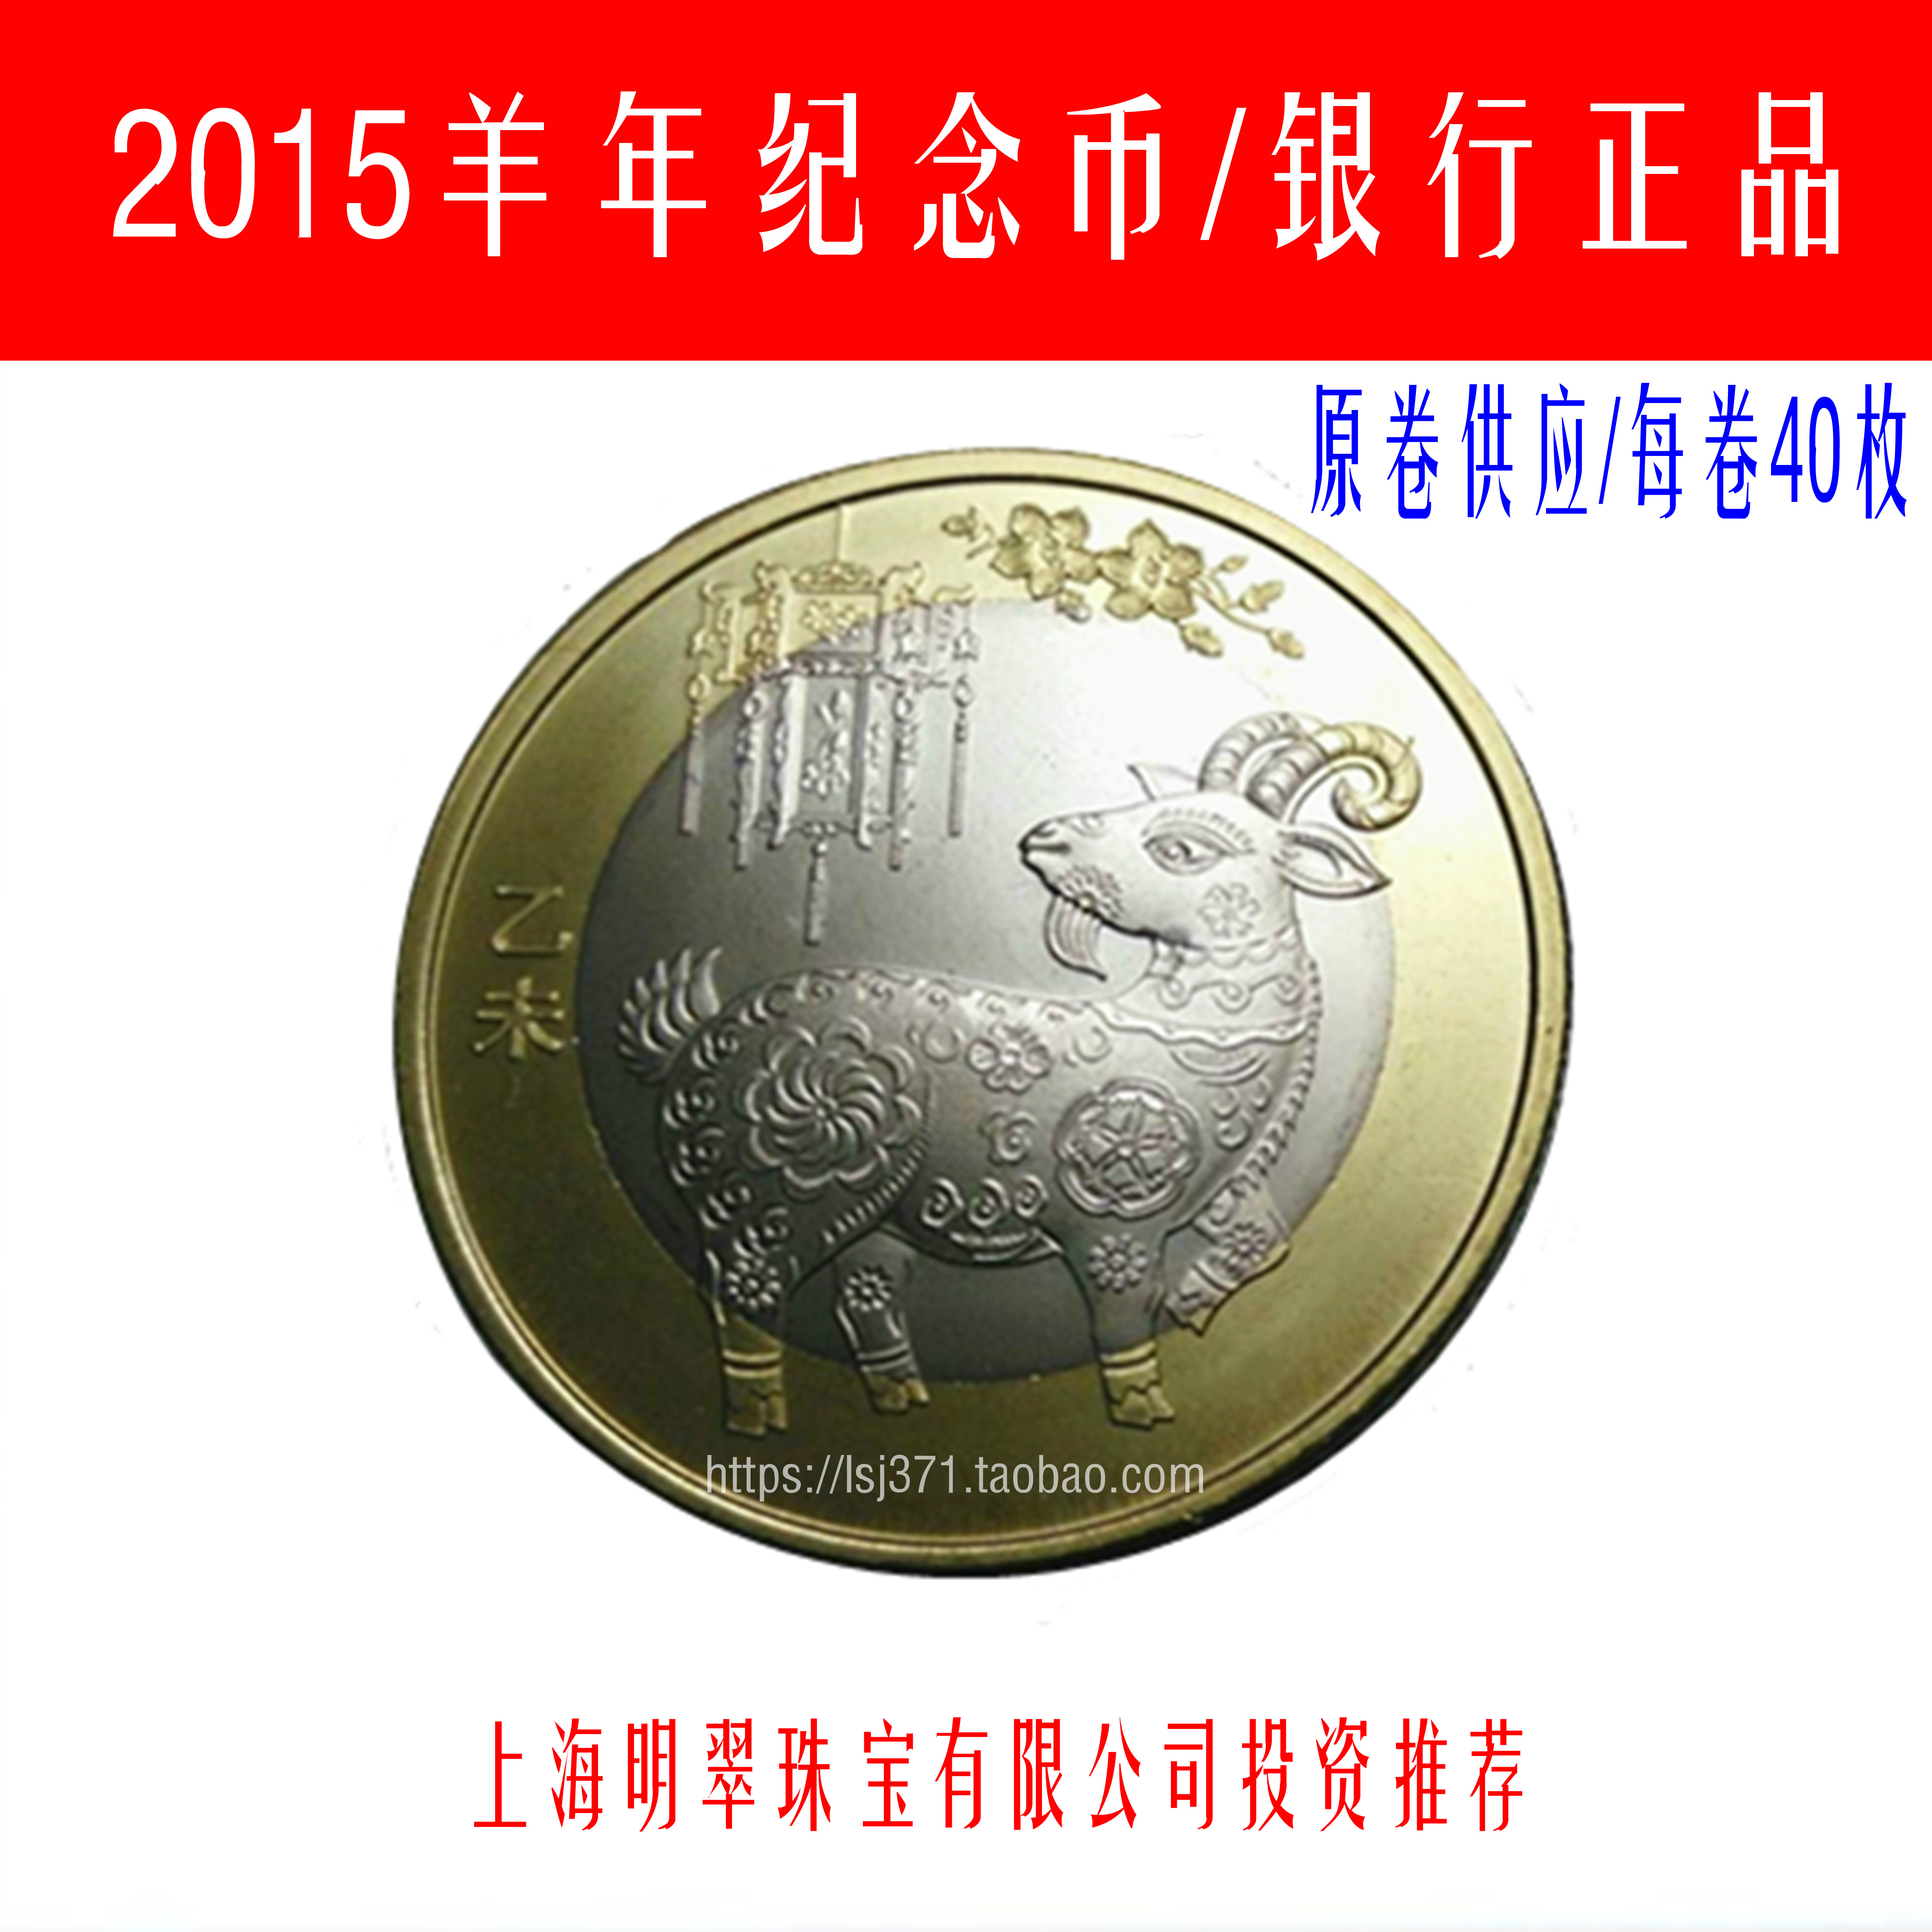 2015年羊年生肖流通纪念币/10元币/新二轮生肖羊年纪念币银行正品